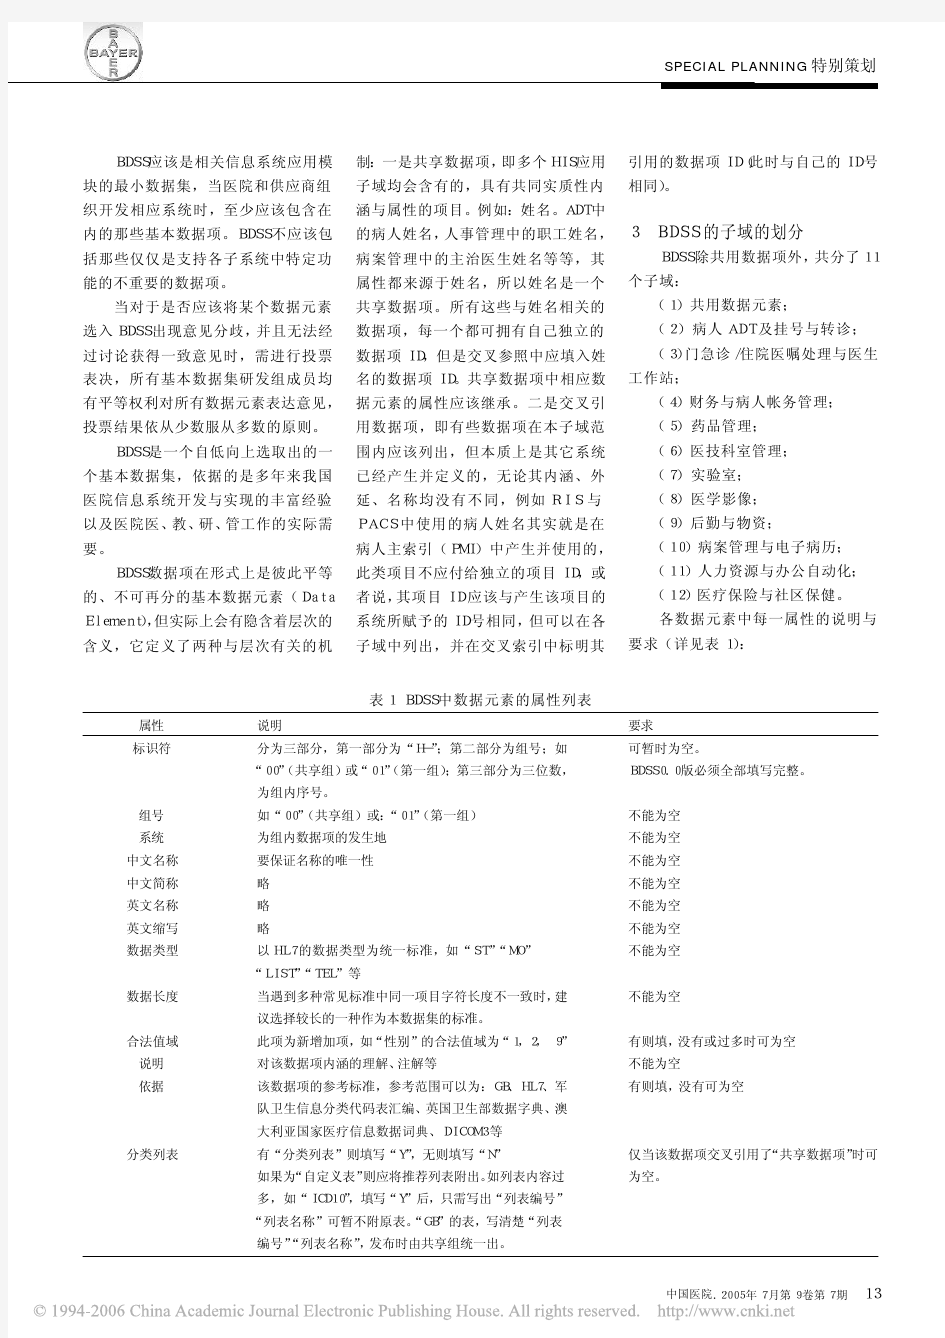 中国医院信息基本数据集标准